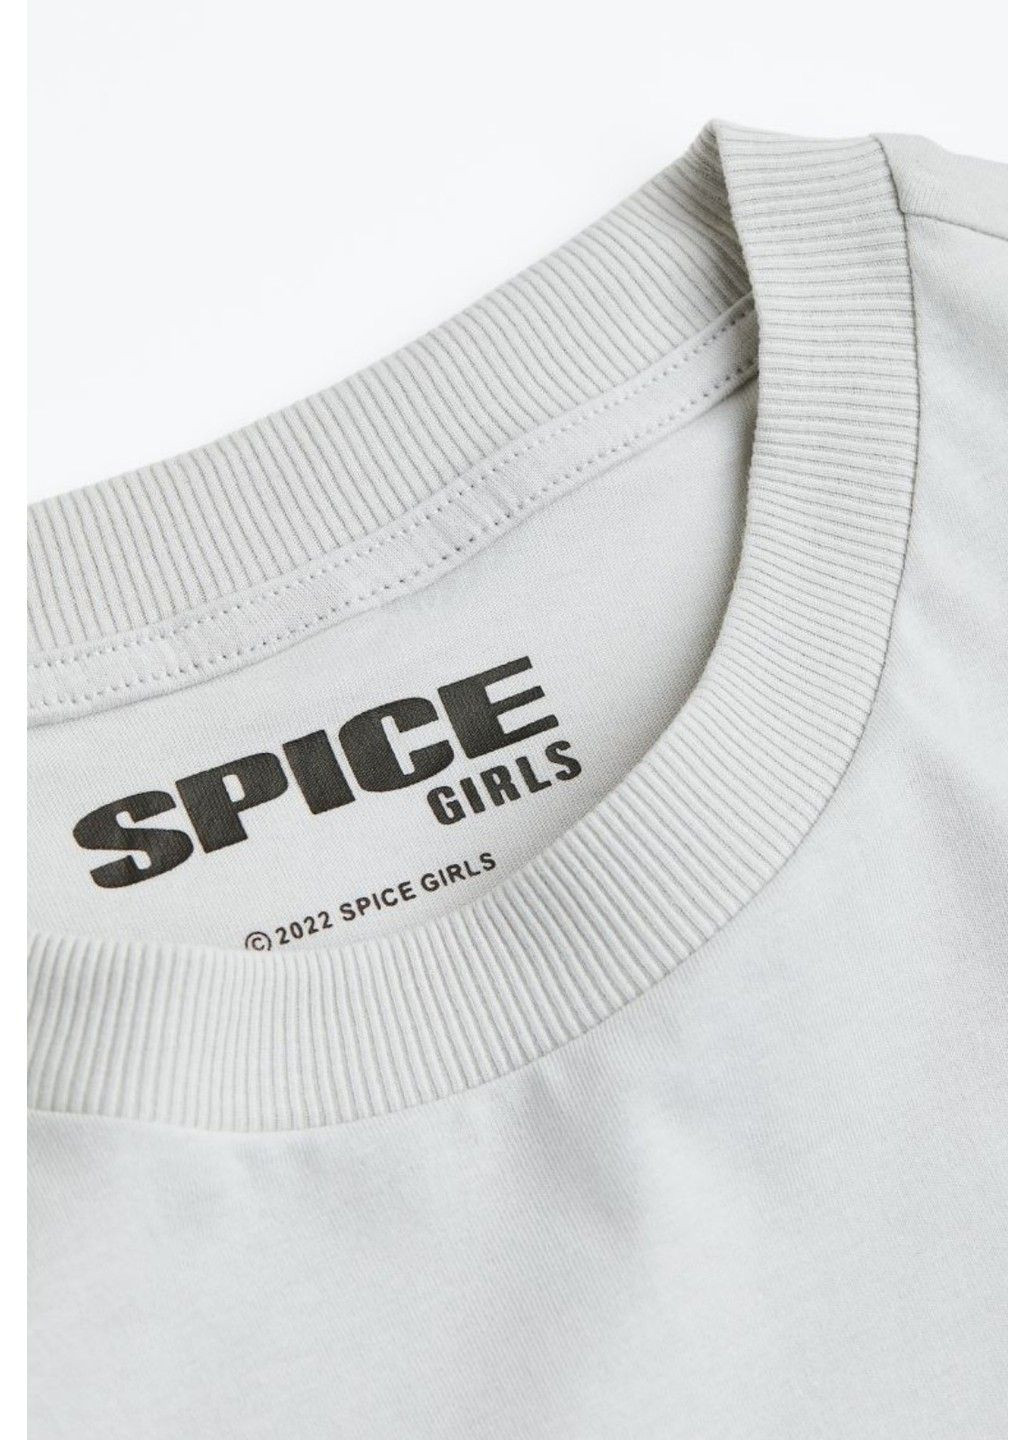 Світло-сіра літня жіноча футболка оверсайз з принтом н&м (56641) хxs світло-сіра H&M